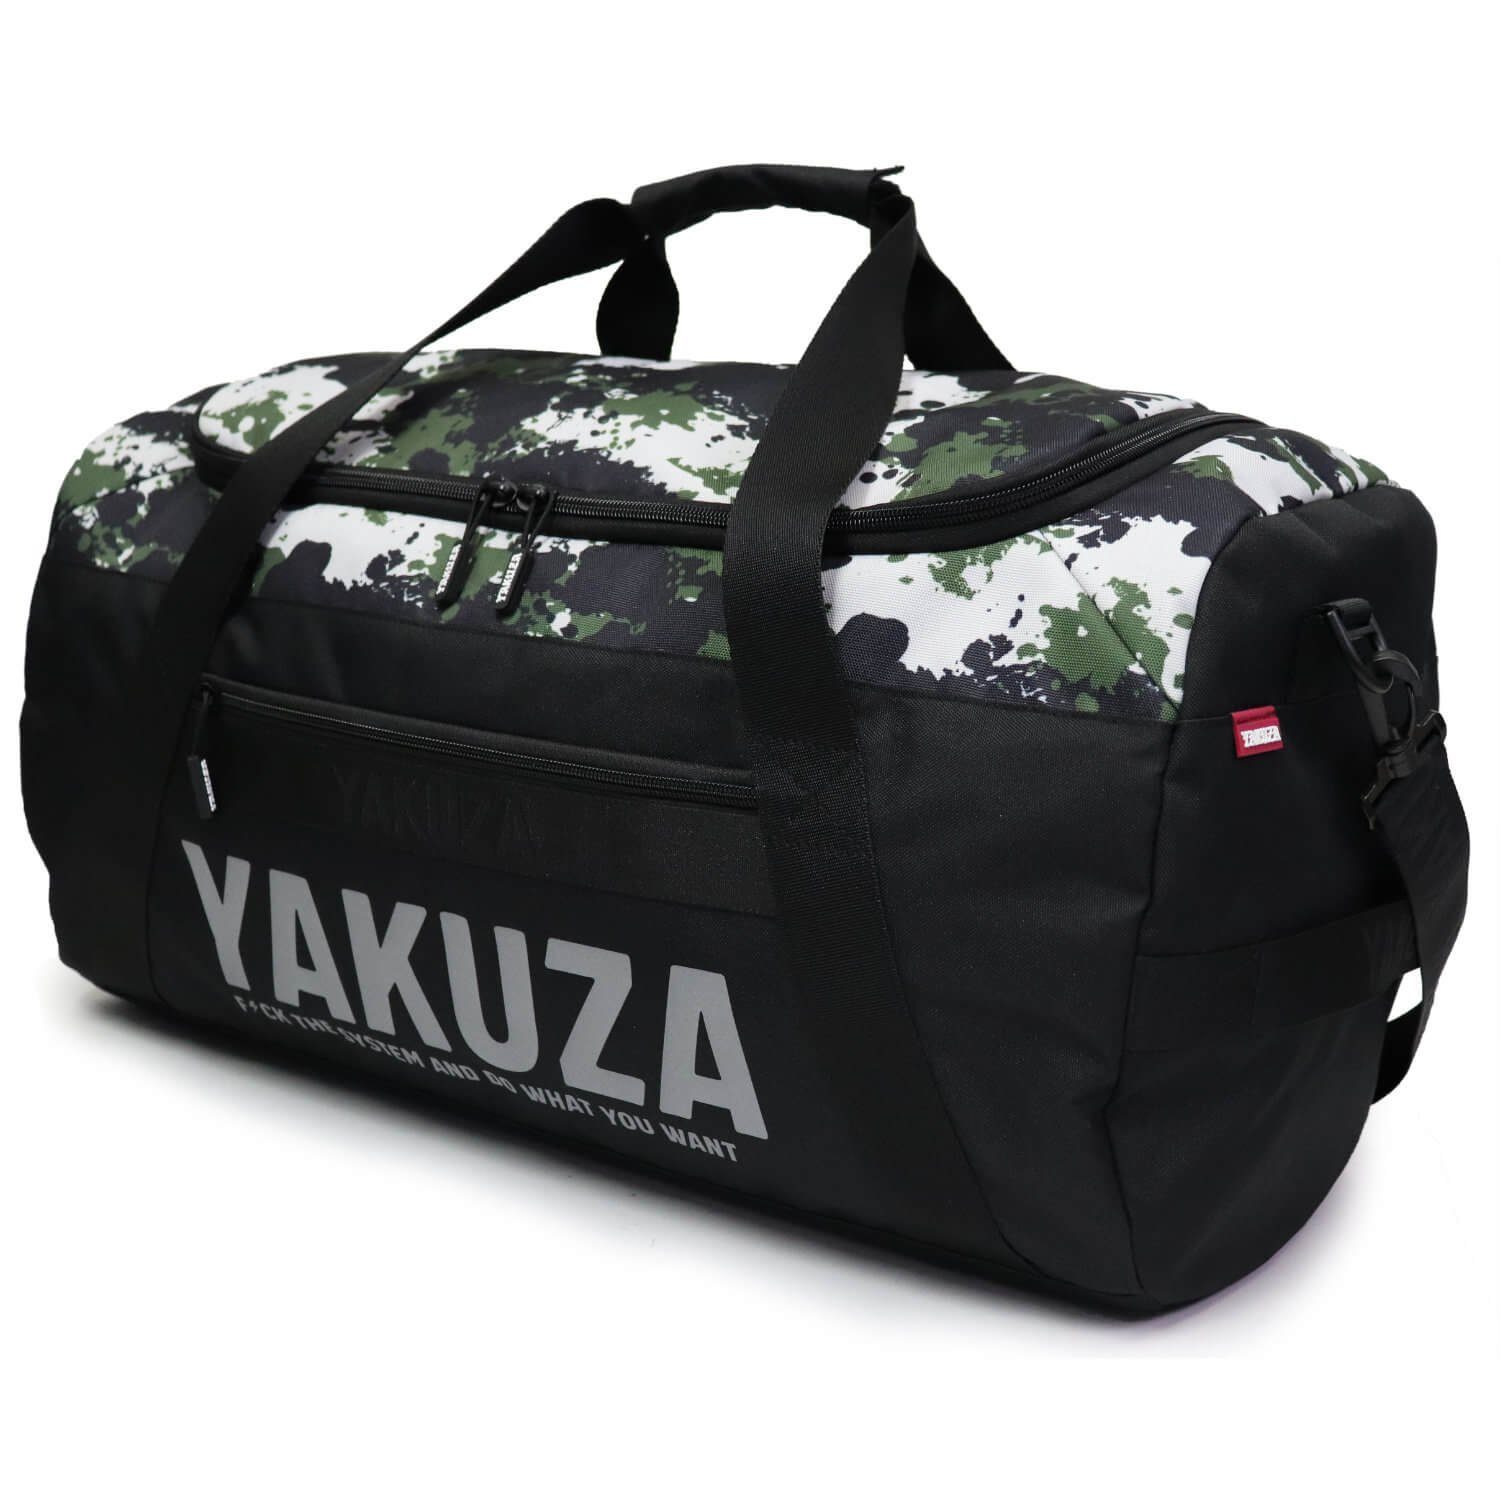 Sporttasche YAKUZA schwarz/camouflage, Sporttasche geräumigem Weekender YAKUZA Tweak Hauptfach mit